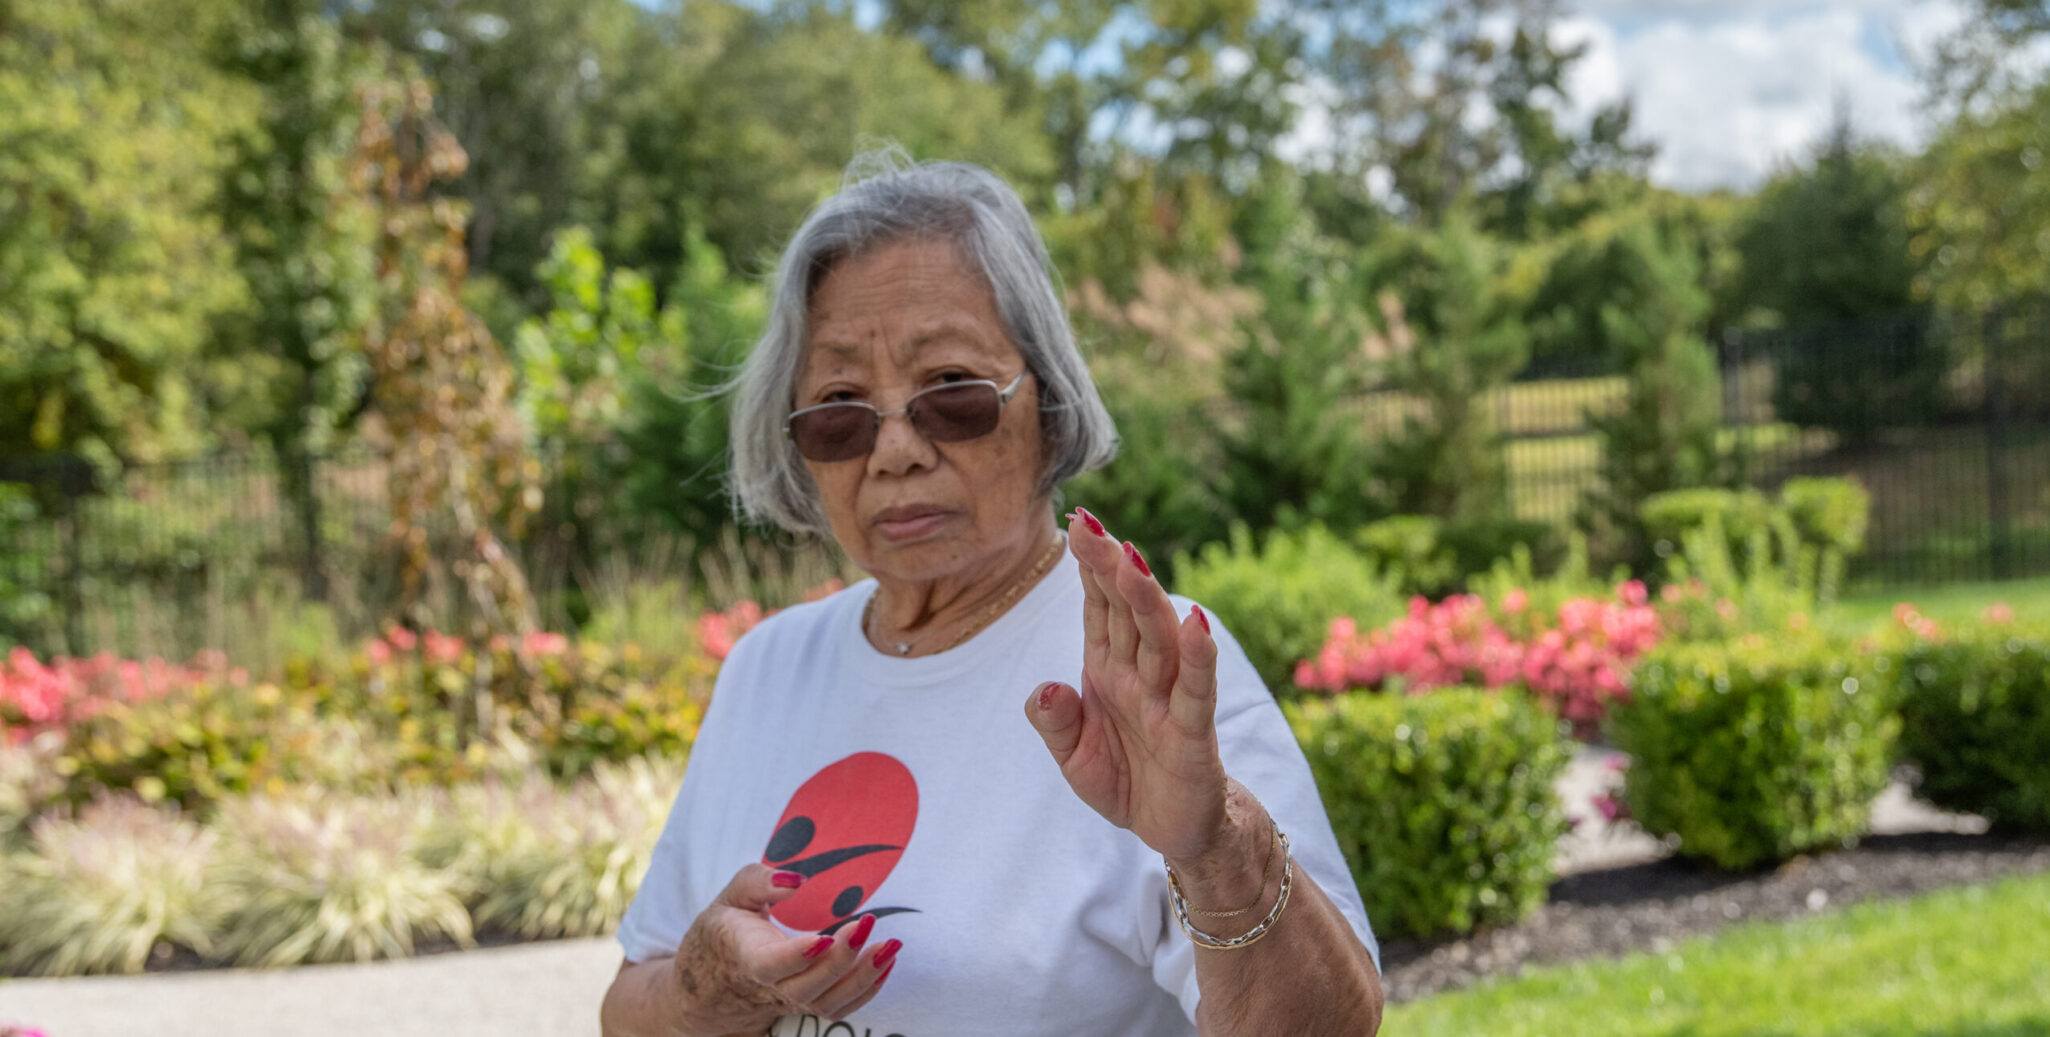 senior resident tae kwon do moves in garden area